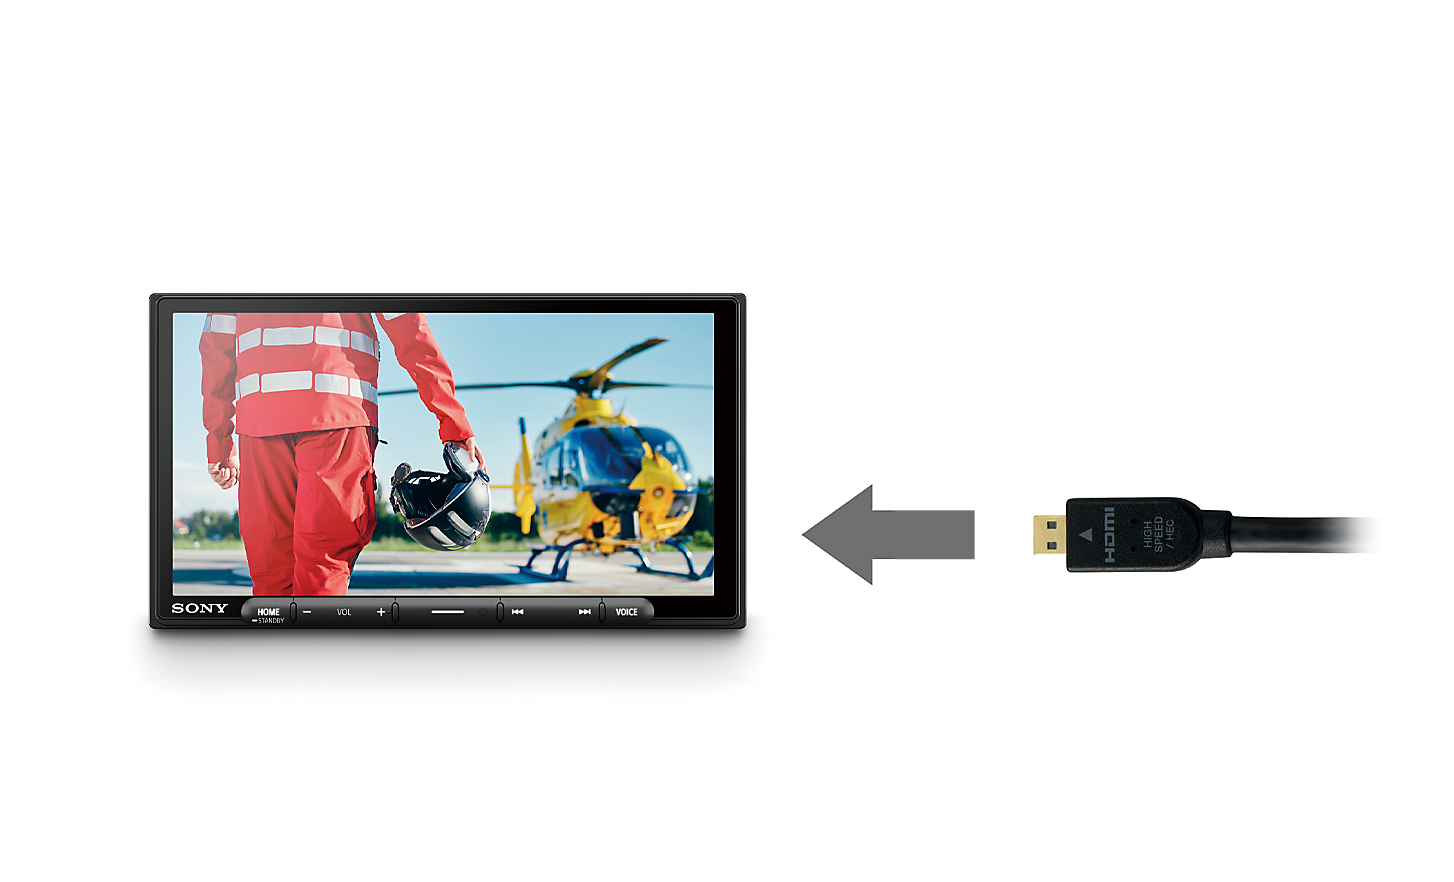 Bild eines HDMI-Kabels mit Pfeil, der auf den XAV-AX6050 zeigt, mit Pilot und Helikopter auf dem Bildschirm